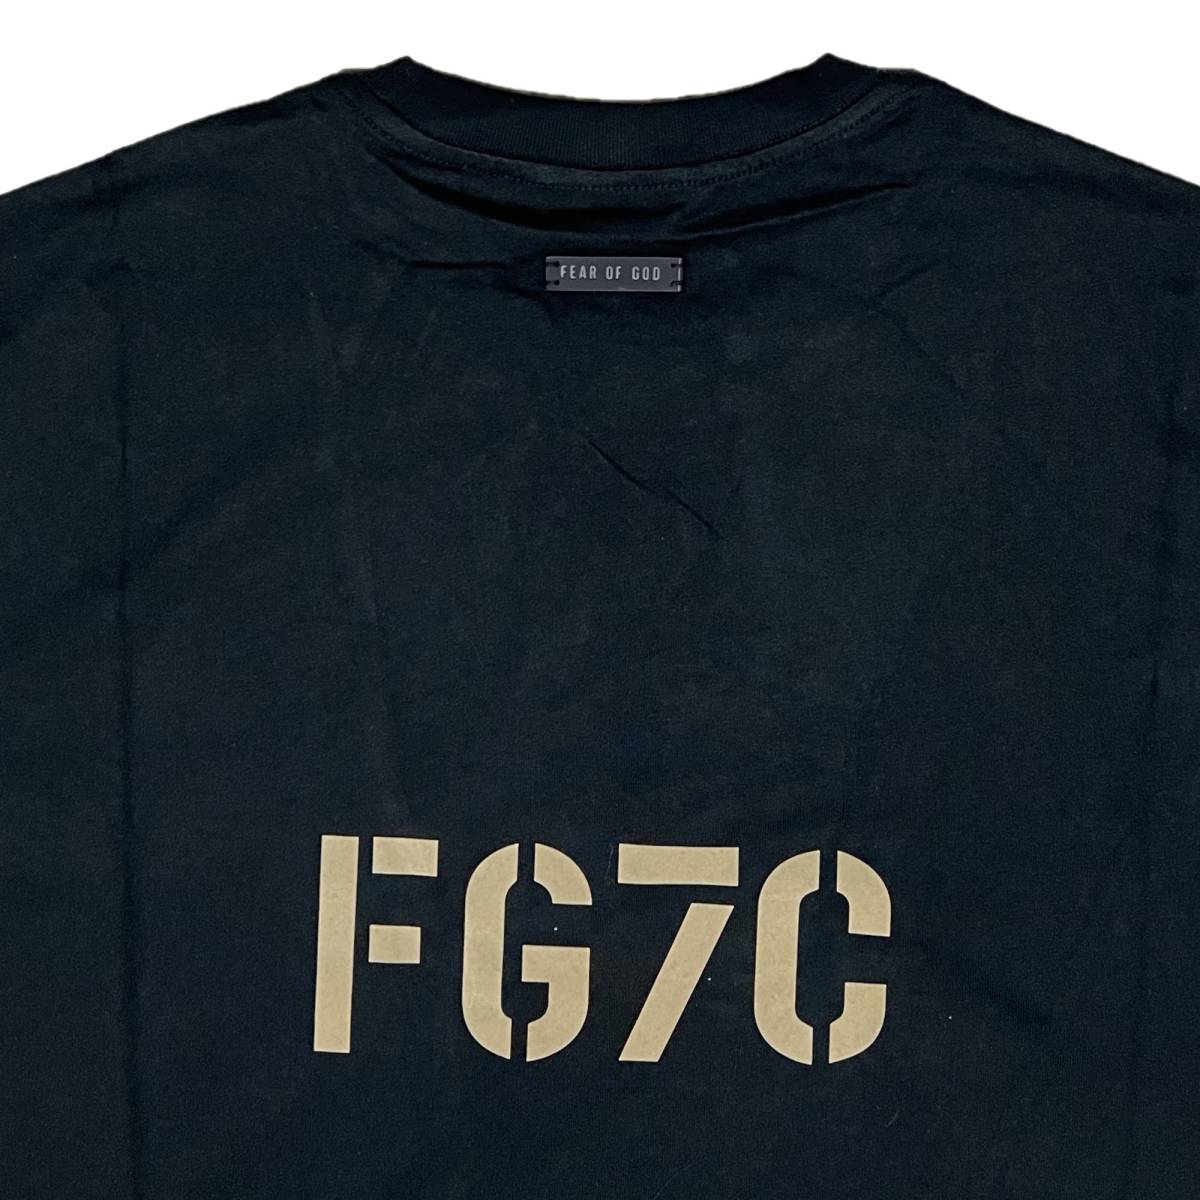 [並行輸入品] FEAR OF GOD FOG ESSETIALS エッセンシャルズ FG7Cロゴ 半袖 Tシャツ (ブラック) (L)